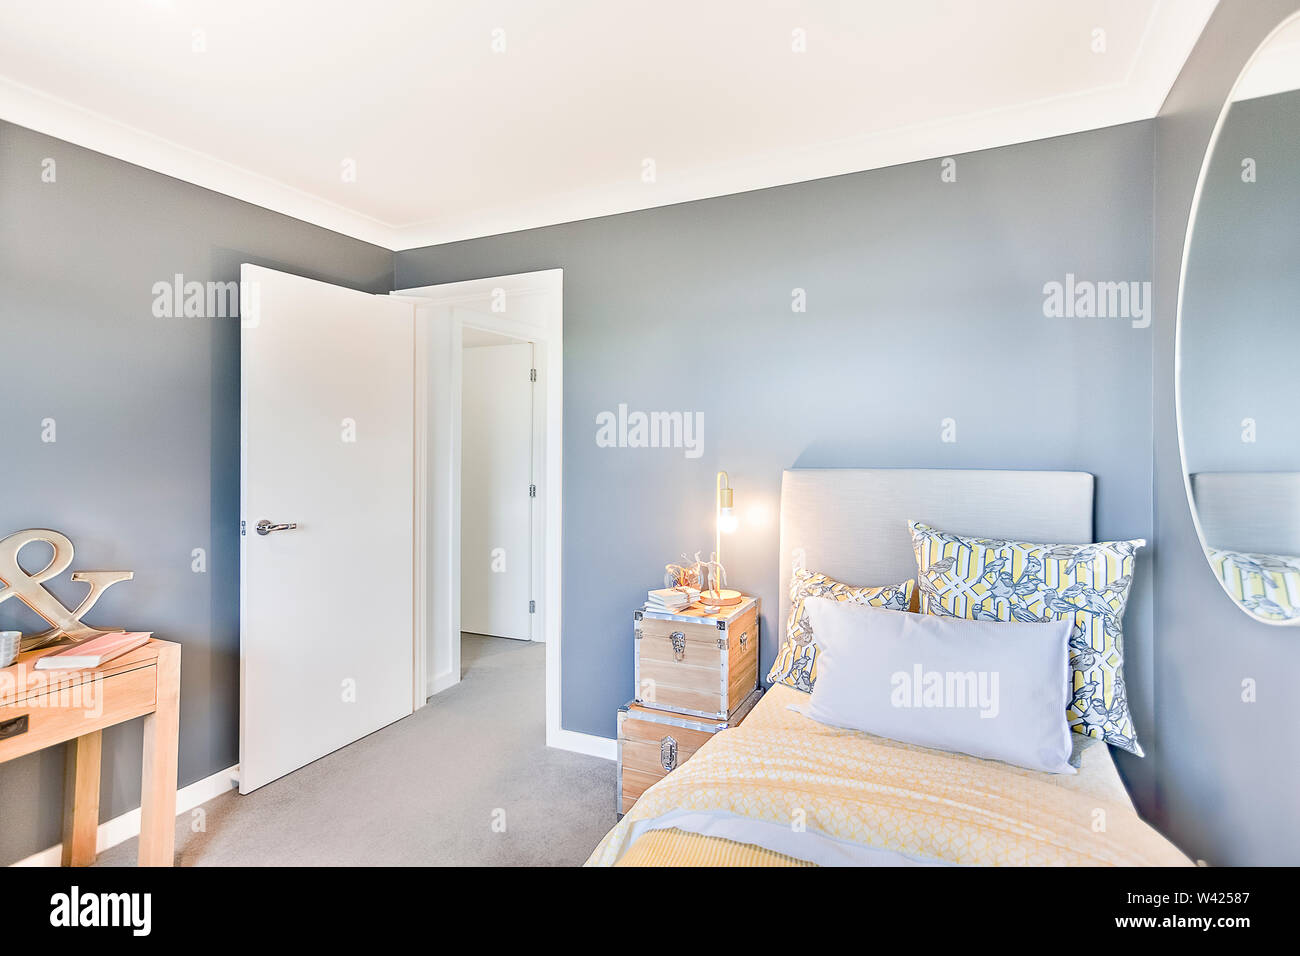 Modernes Schlafzimmer mit offener Tür und Wand Spiegel auf den hellblauen Wand gibt es Kissen auf den gelben Decke neben Holzkiste Lampen auf dem Teppich f Stockfoto